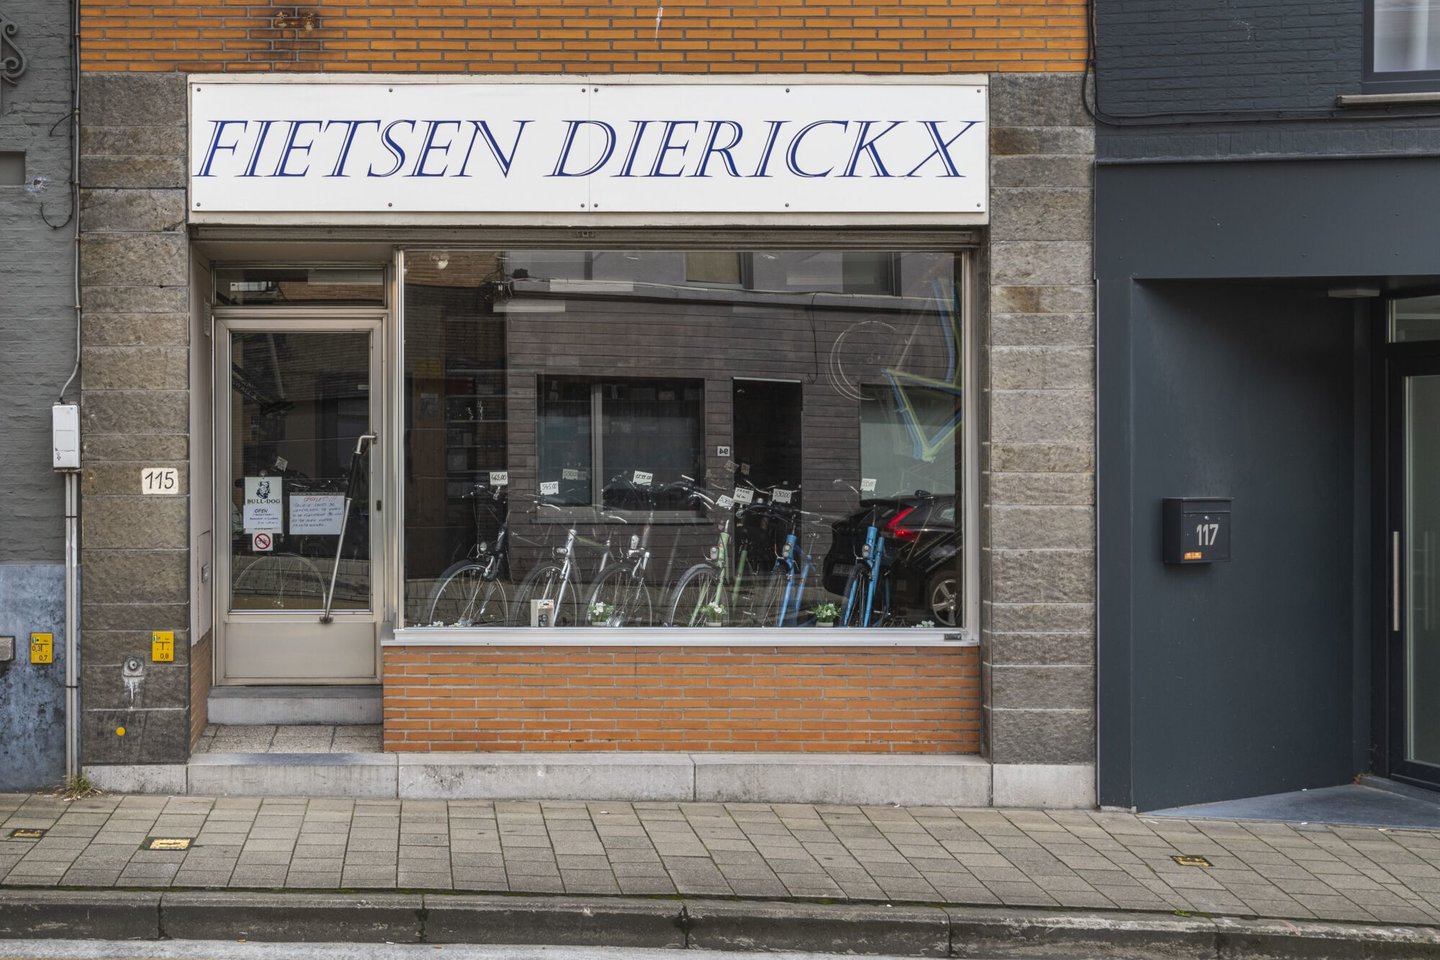 Etalage van fietswinkel Dierickx in Gent